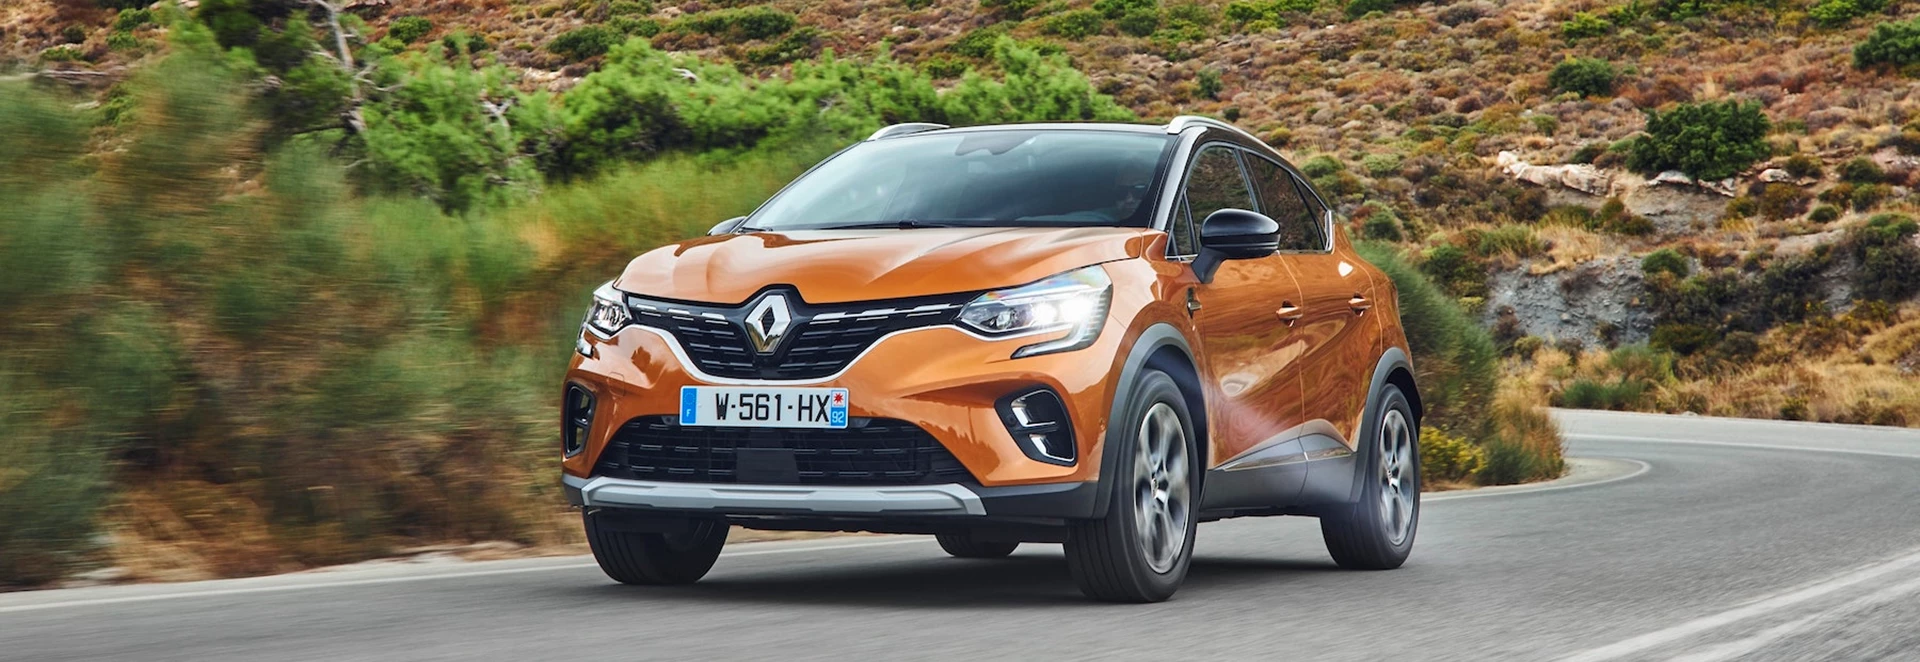 Renault Captur 2020 review